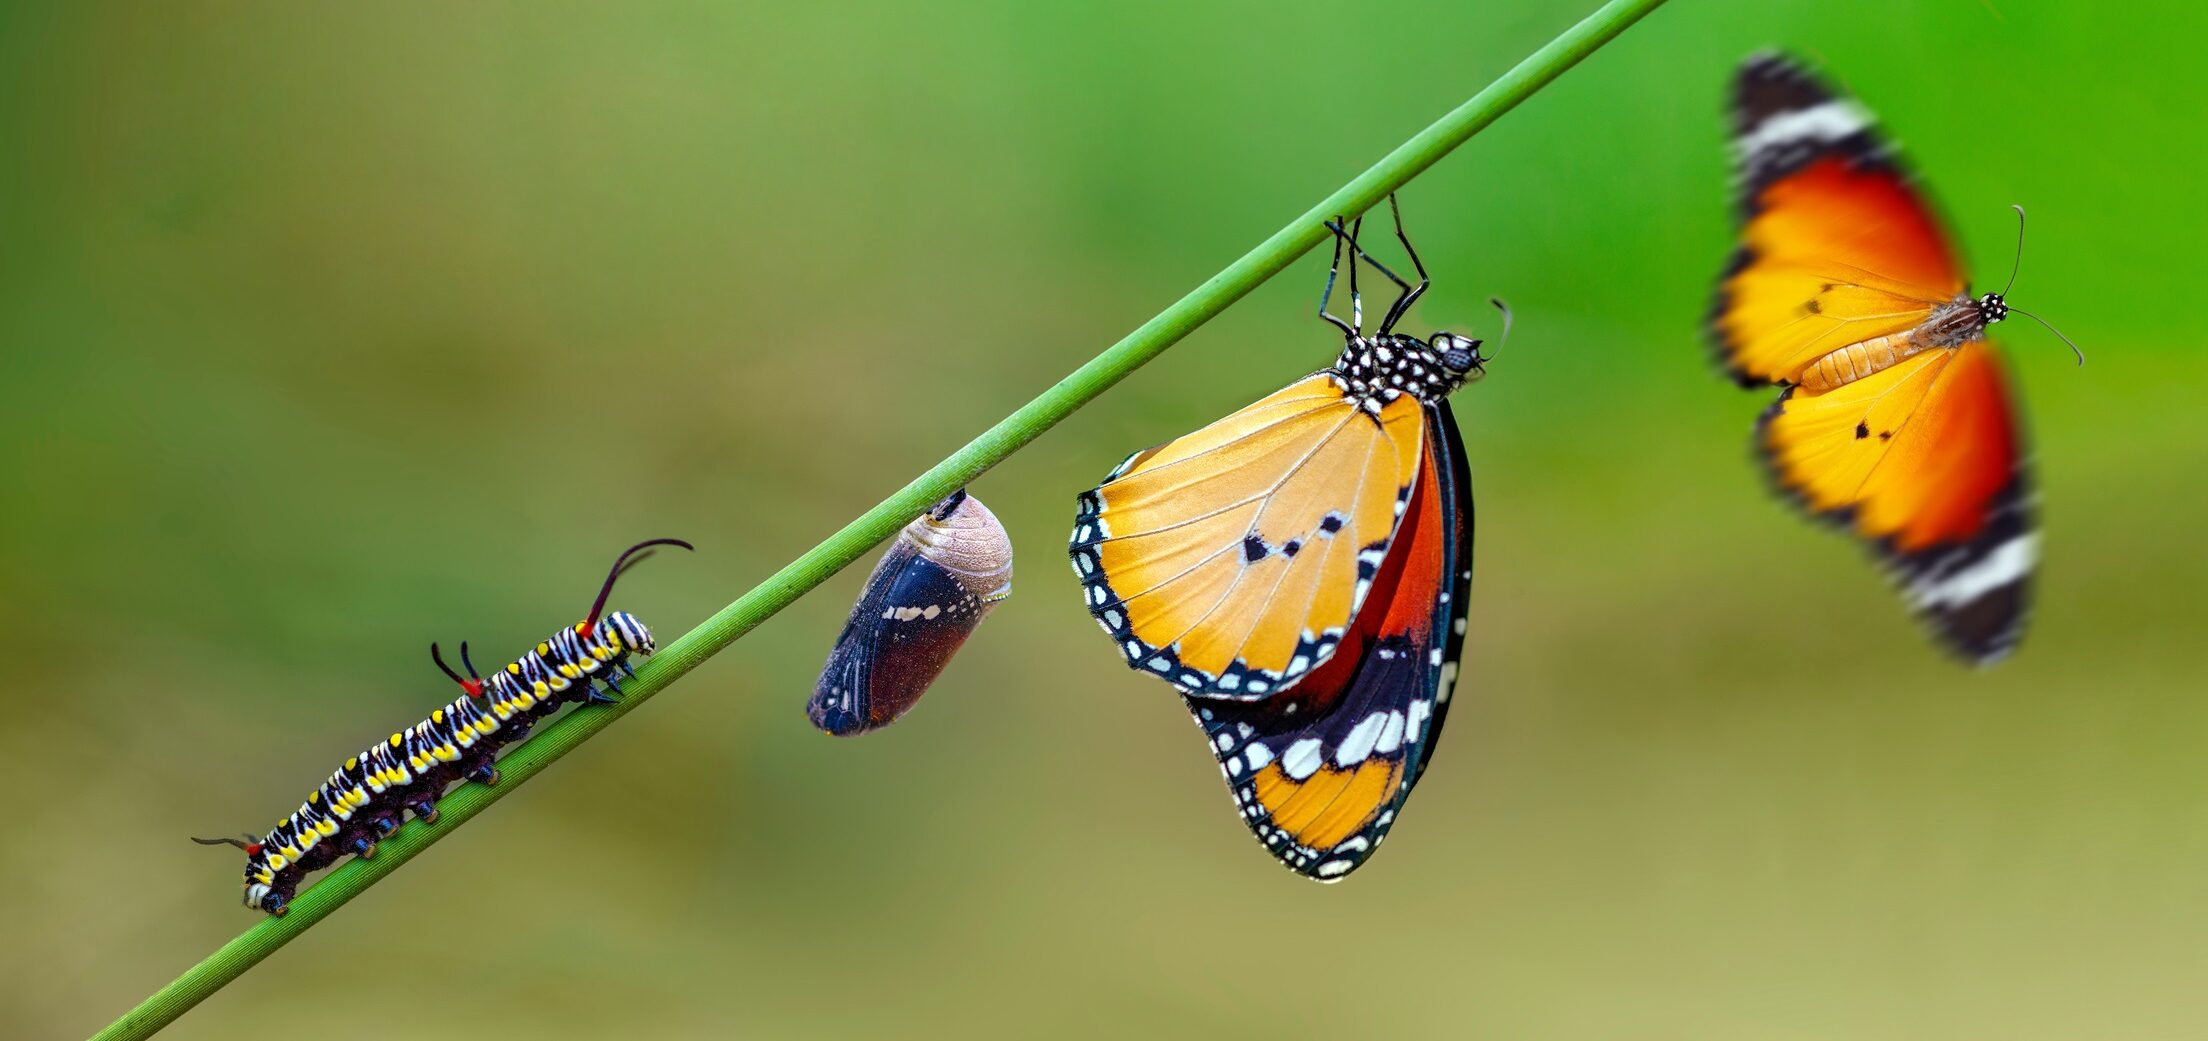 De kracht van communities ‘Transformeren van rups tot vlinder’